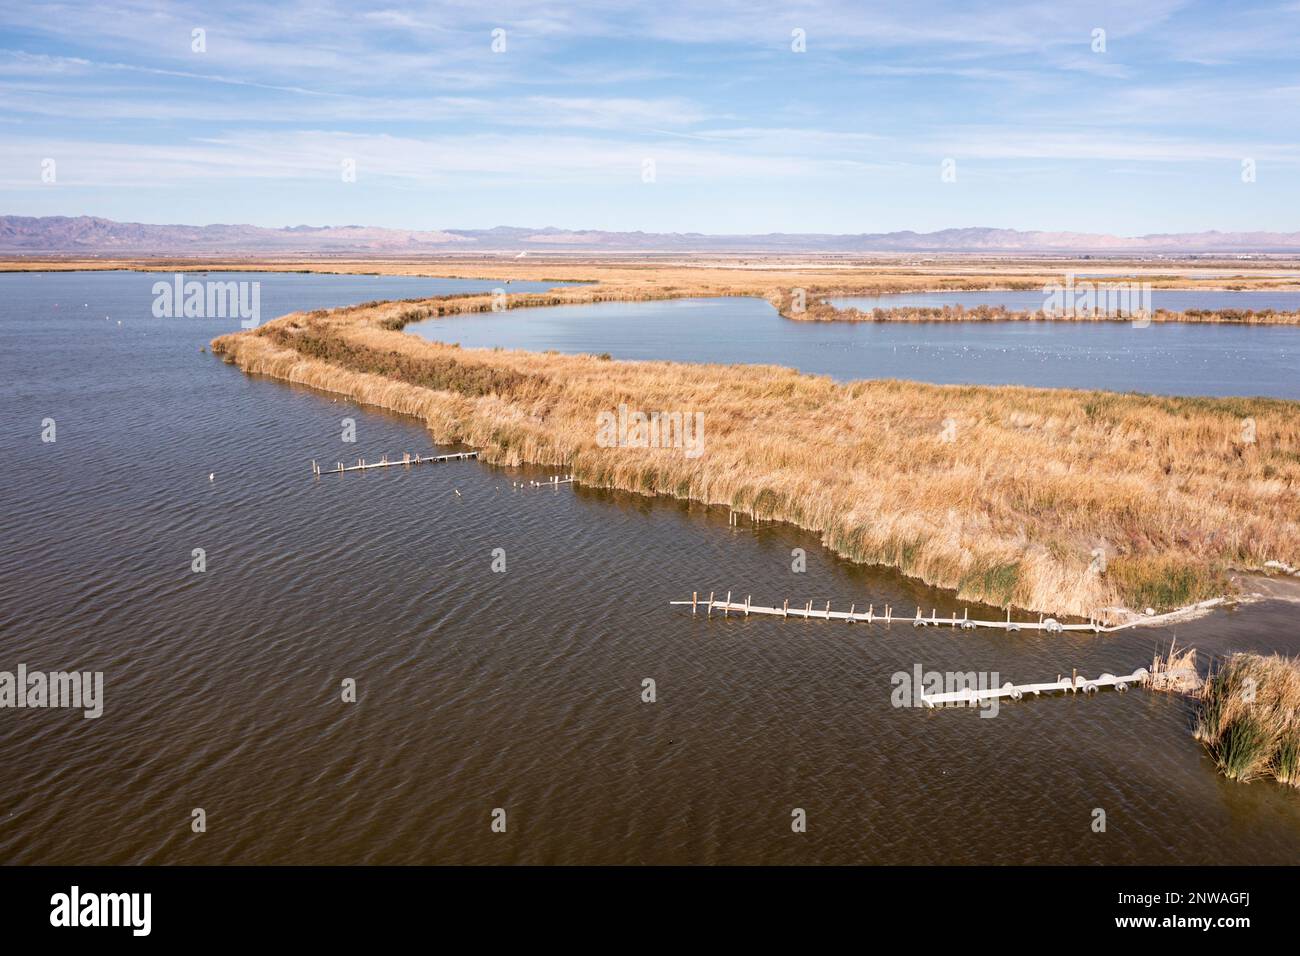 Le zone umide appena create tentano di mitigare la crisi ambientale che si sta manifestando nel Mar di Salton, un lago in rapida contrazione nel deserto della California. Foto Stock